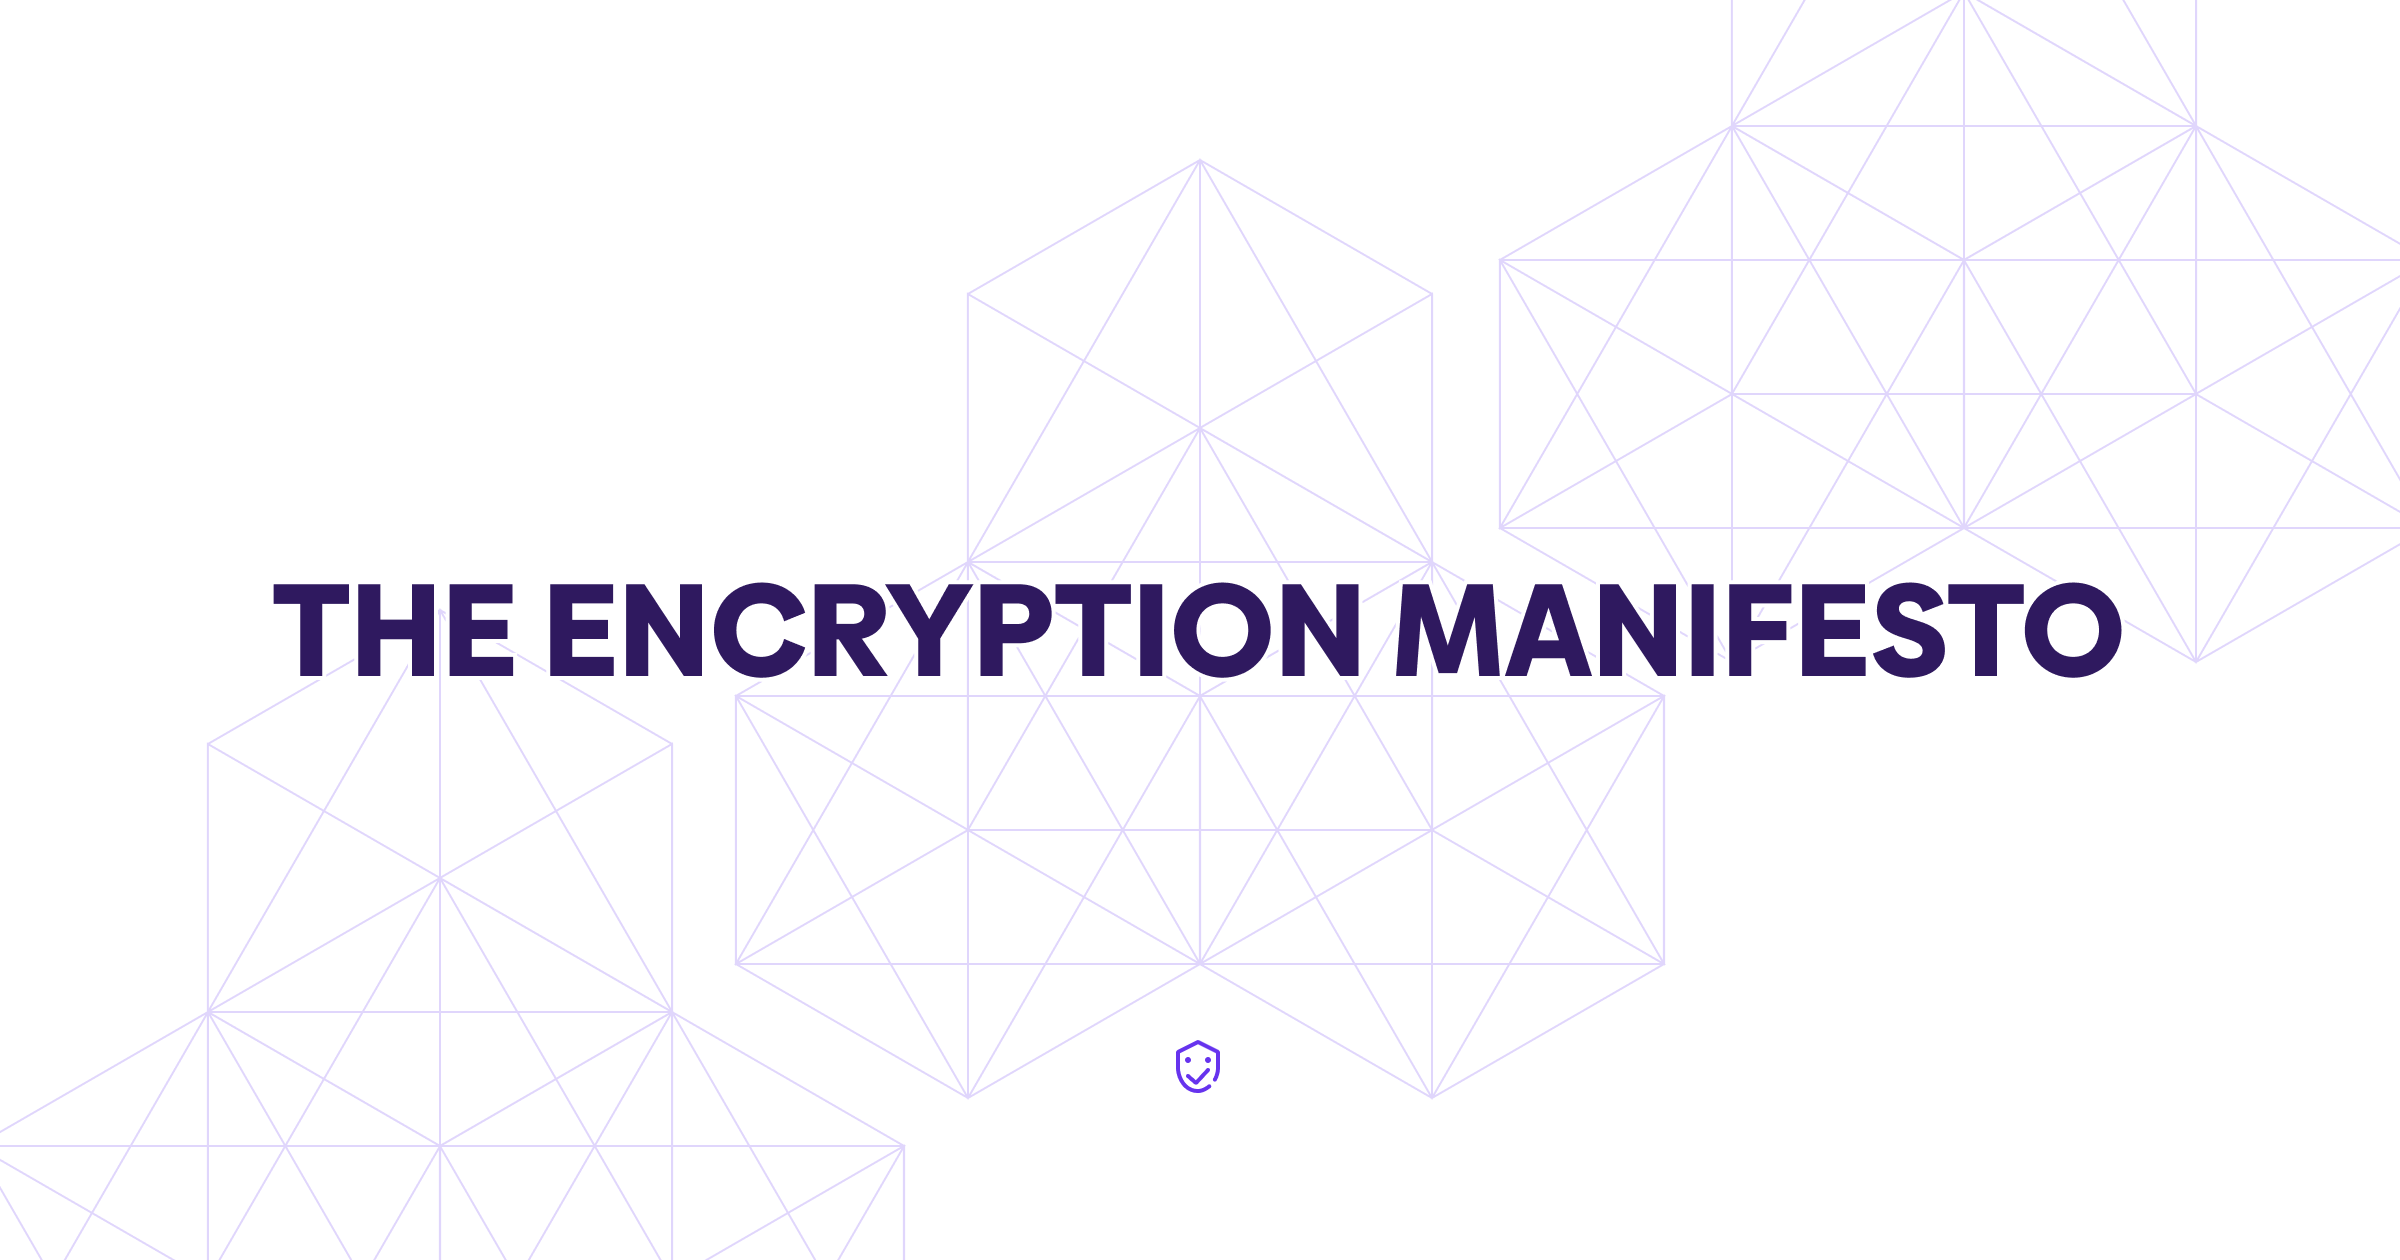 The Encryption Manifesto